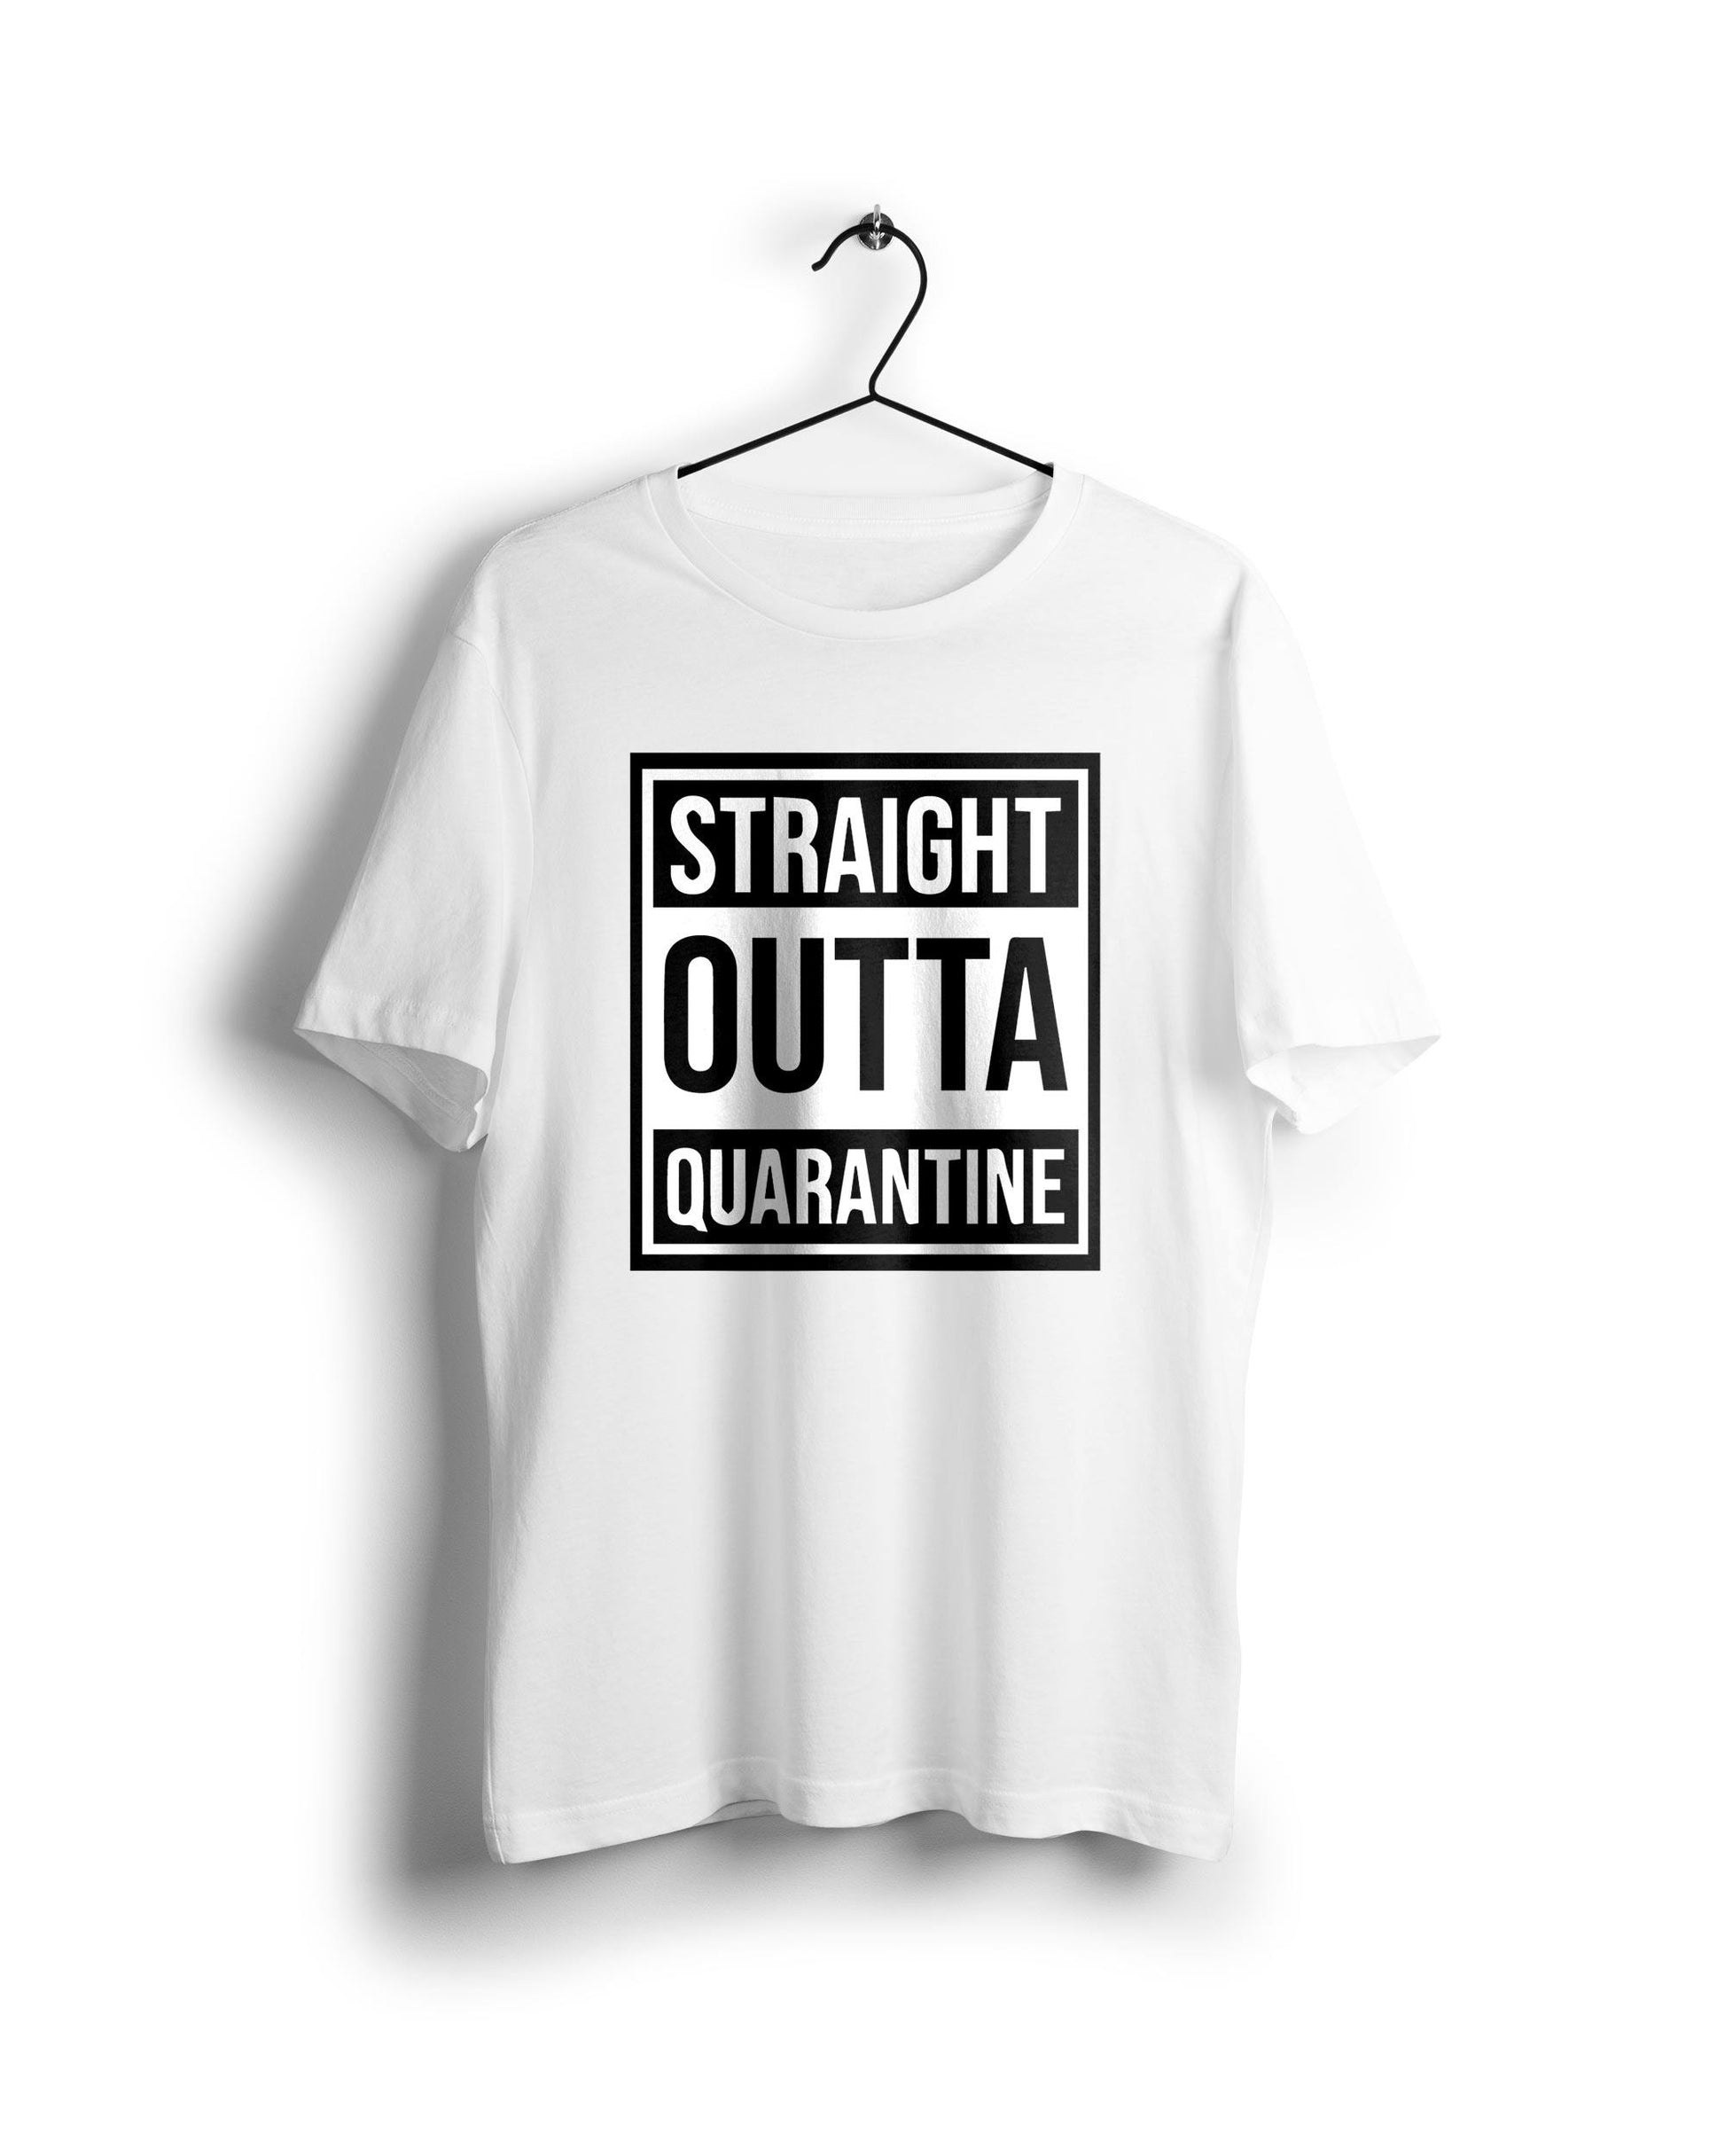 Straight outta quarantine - Digital Graphics Basic T-shirt White - Ravin 